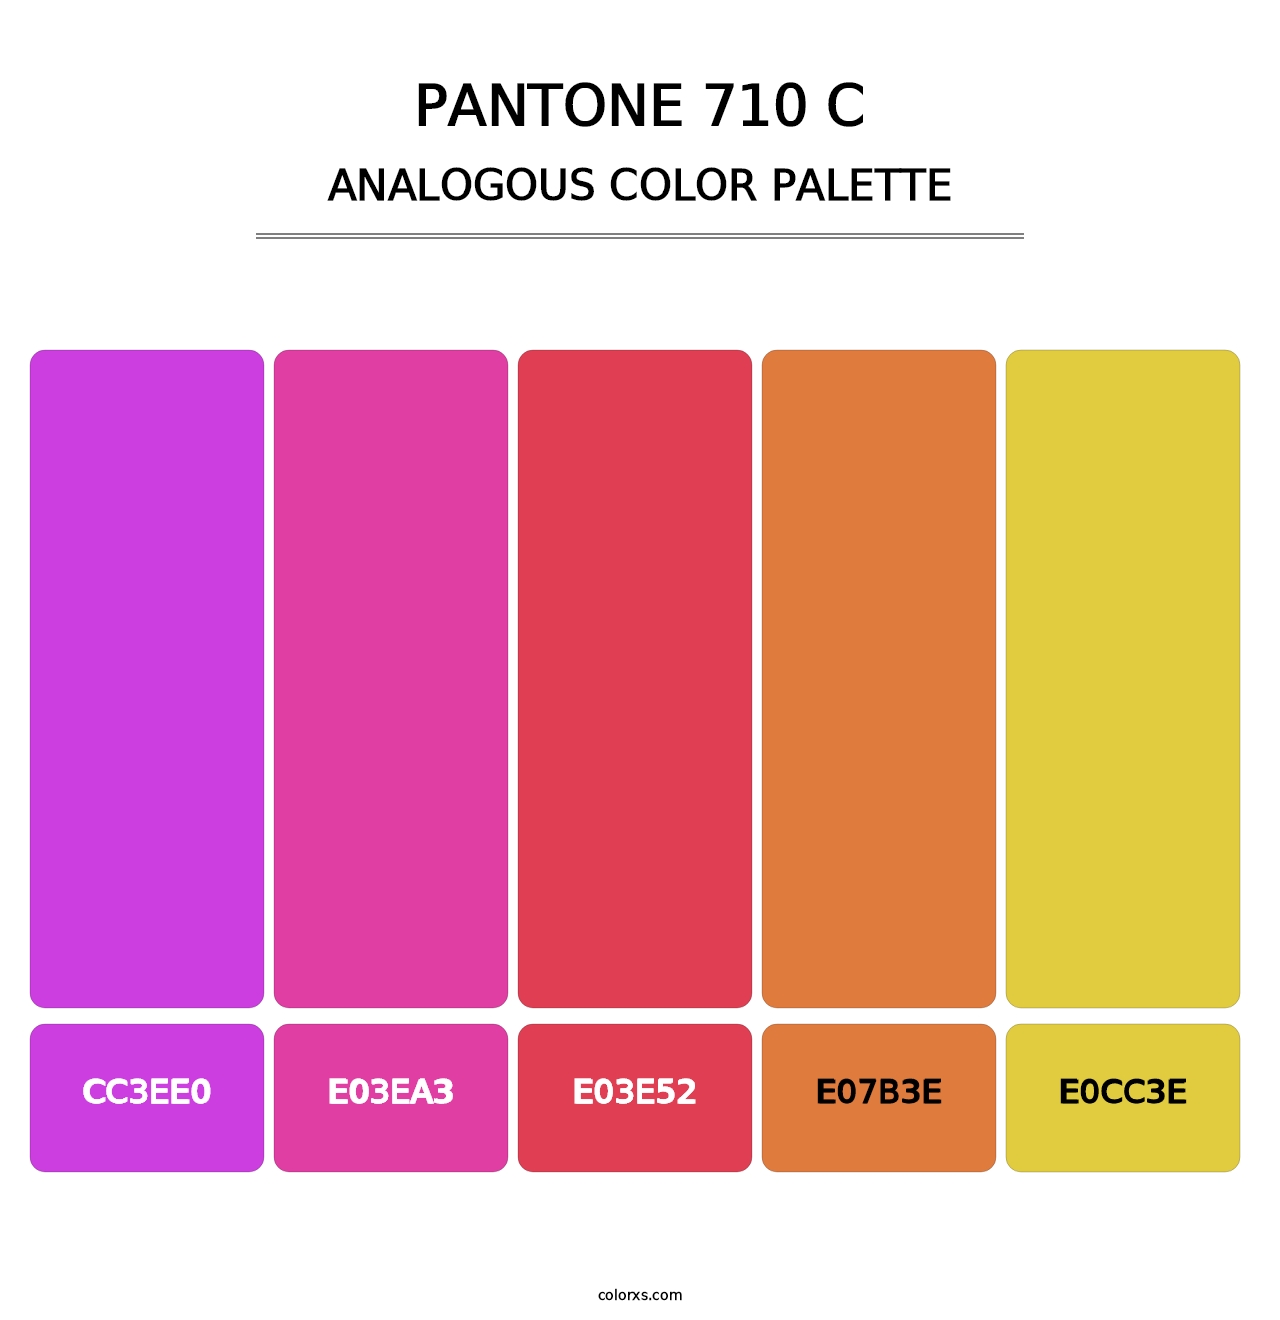 PANTONE 710 C - Analogous Color Palette